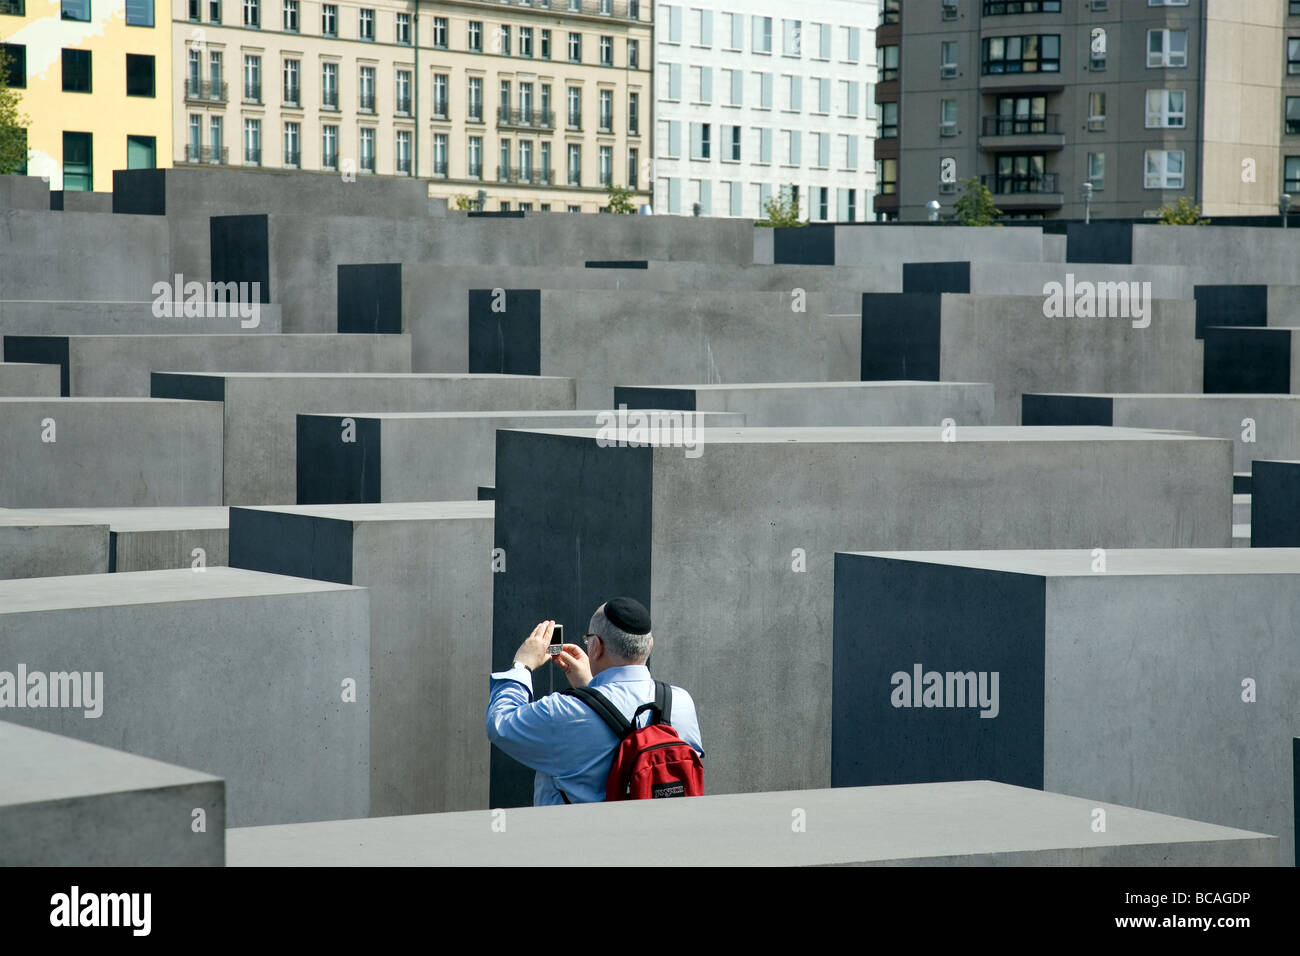 Memoriale al assassinato ebrei di Europa - uomo ebraico fotografare - Berlino Germania Foto Stock